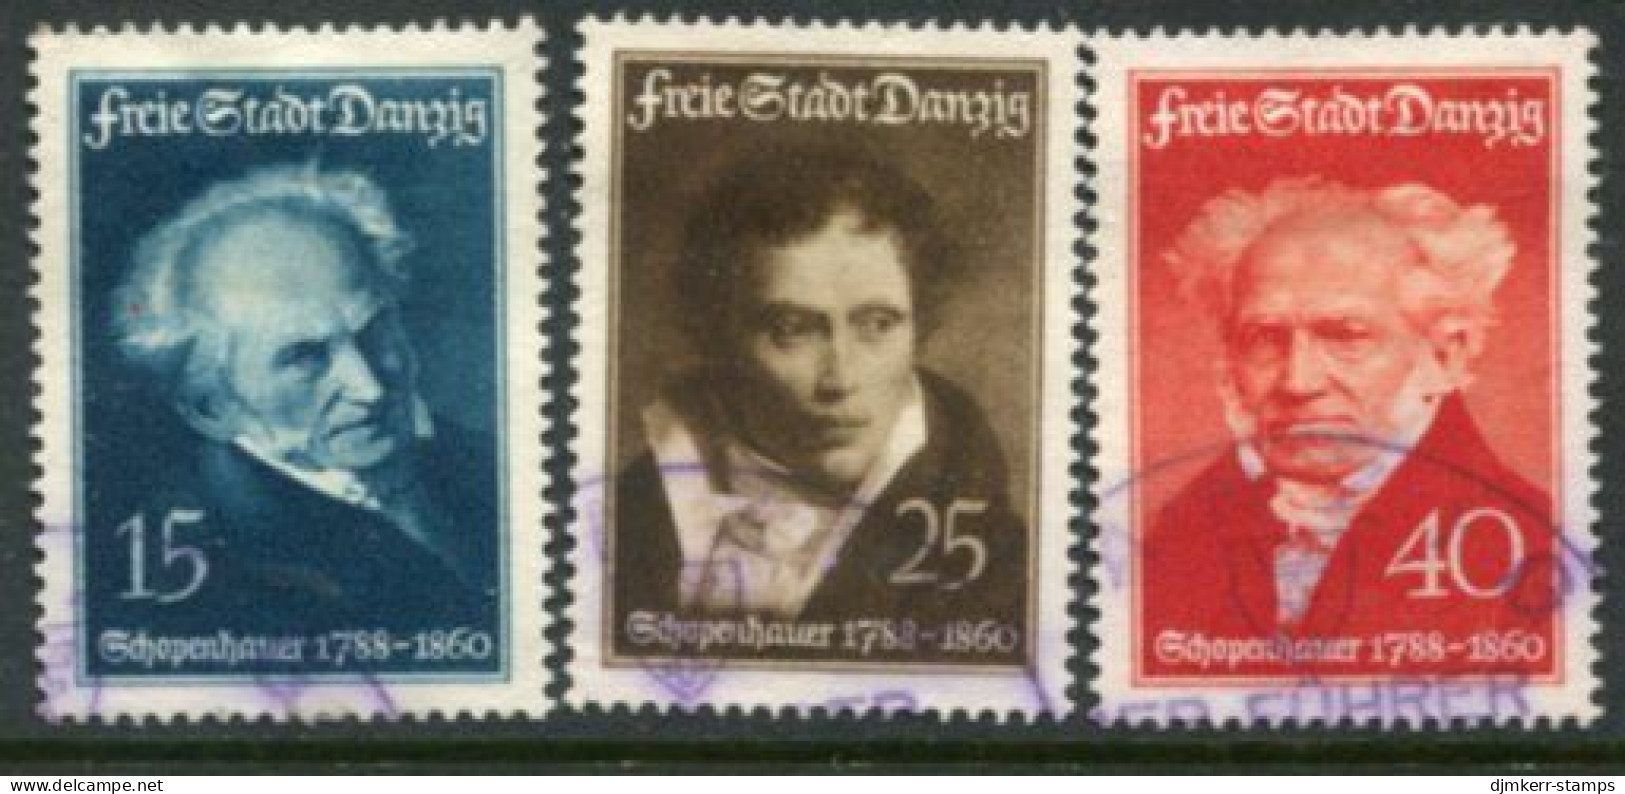 DANZIG 1938 Schopenhauer Birth Anniversary Used  Michel 281-83 - Oblitérés